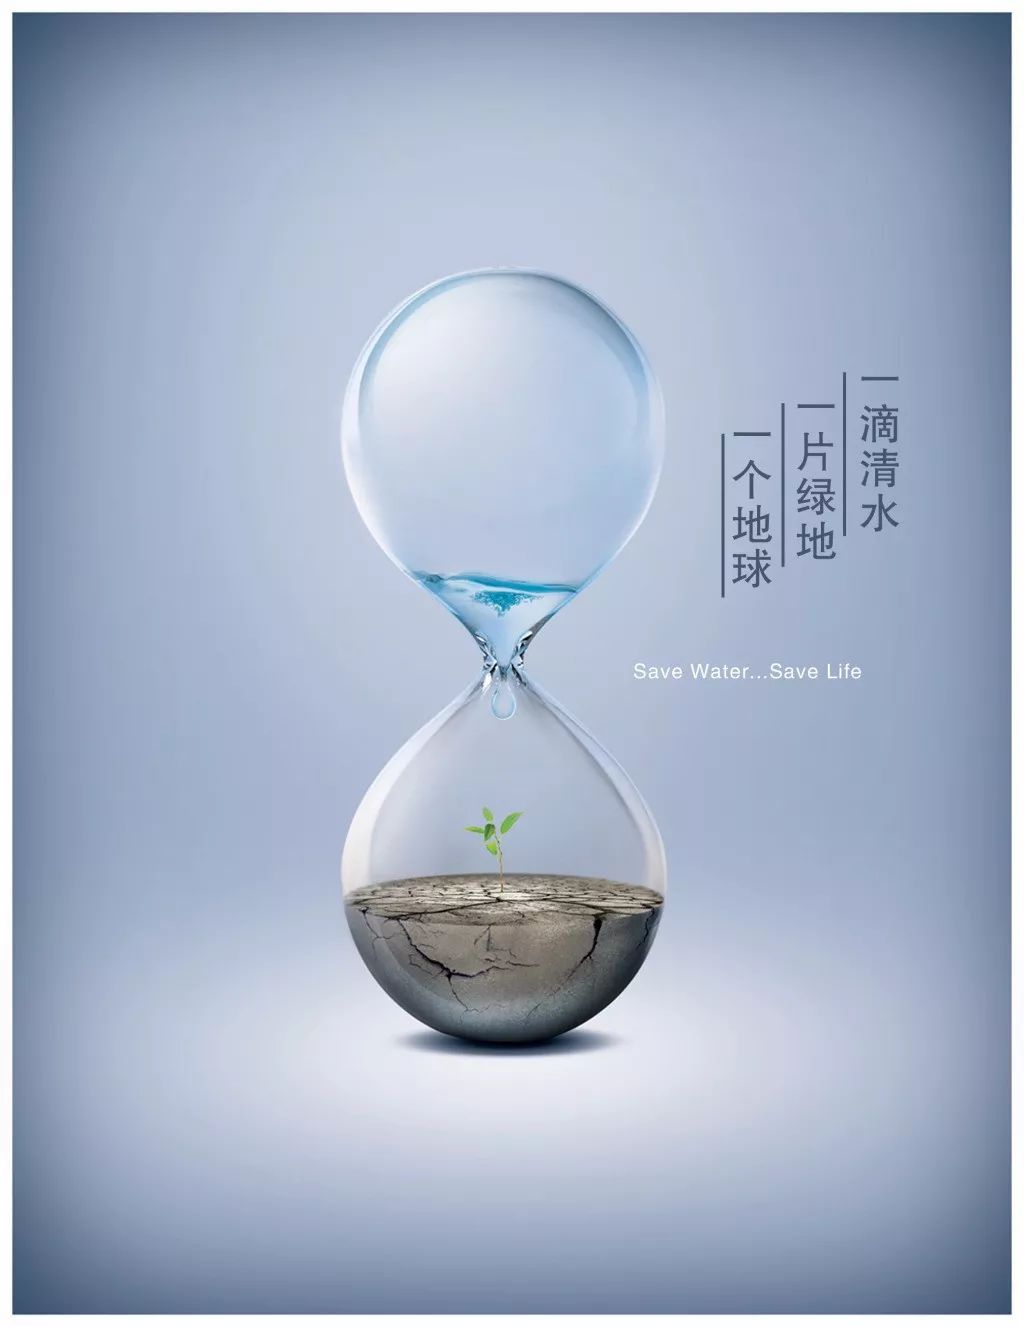 公益广告保护水资源